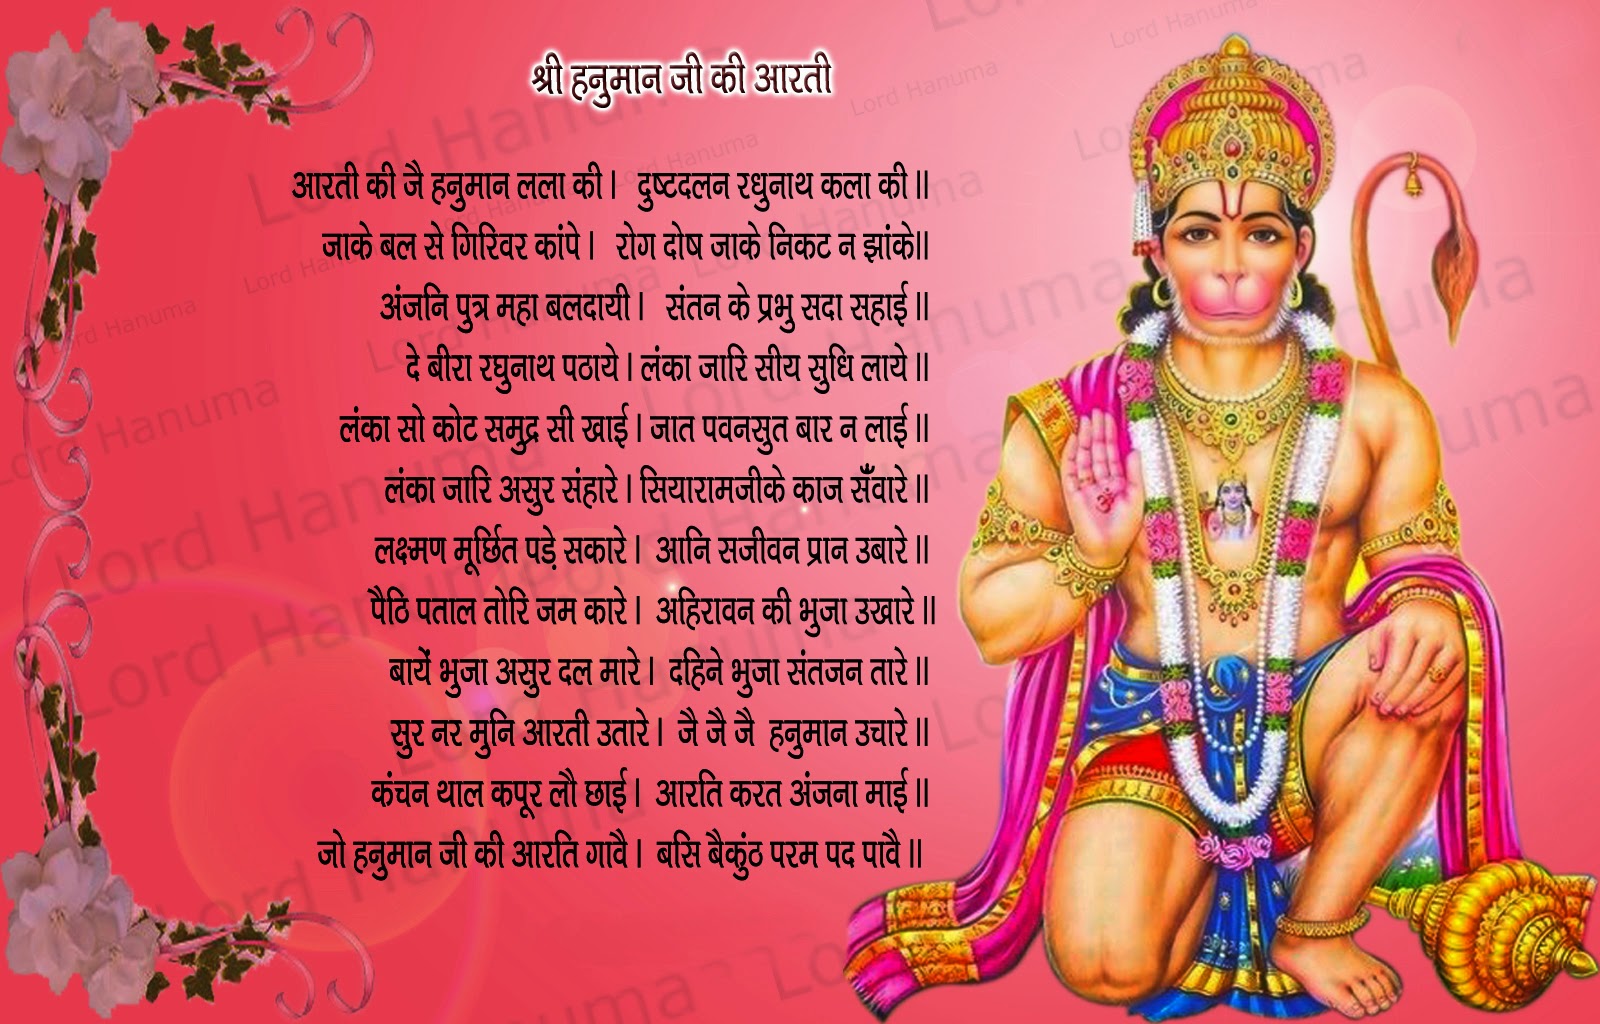 hanuman ji aarti lyrics pdf mp3 video download and listen